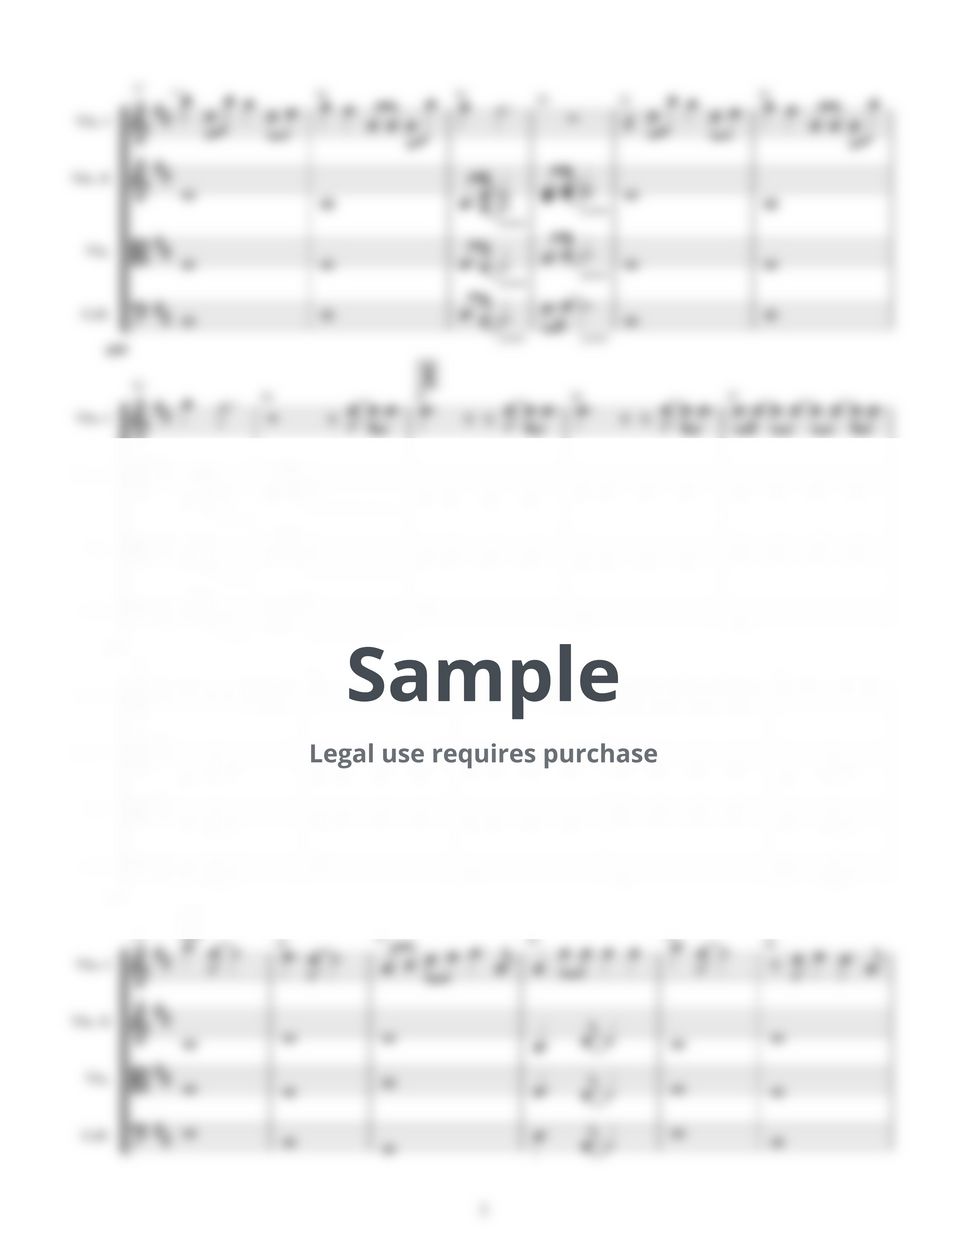 Dua Lipa - Don't Start Now (for string quartet Score+Parts) by ScoreProduction